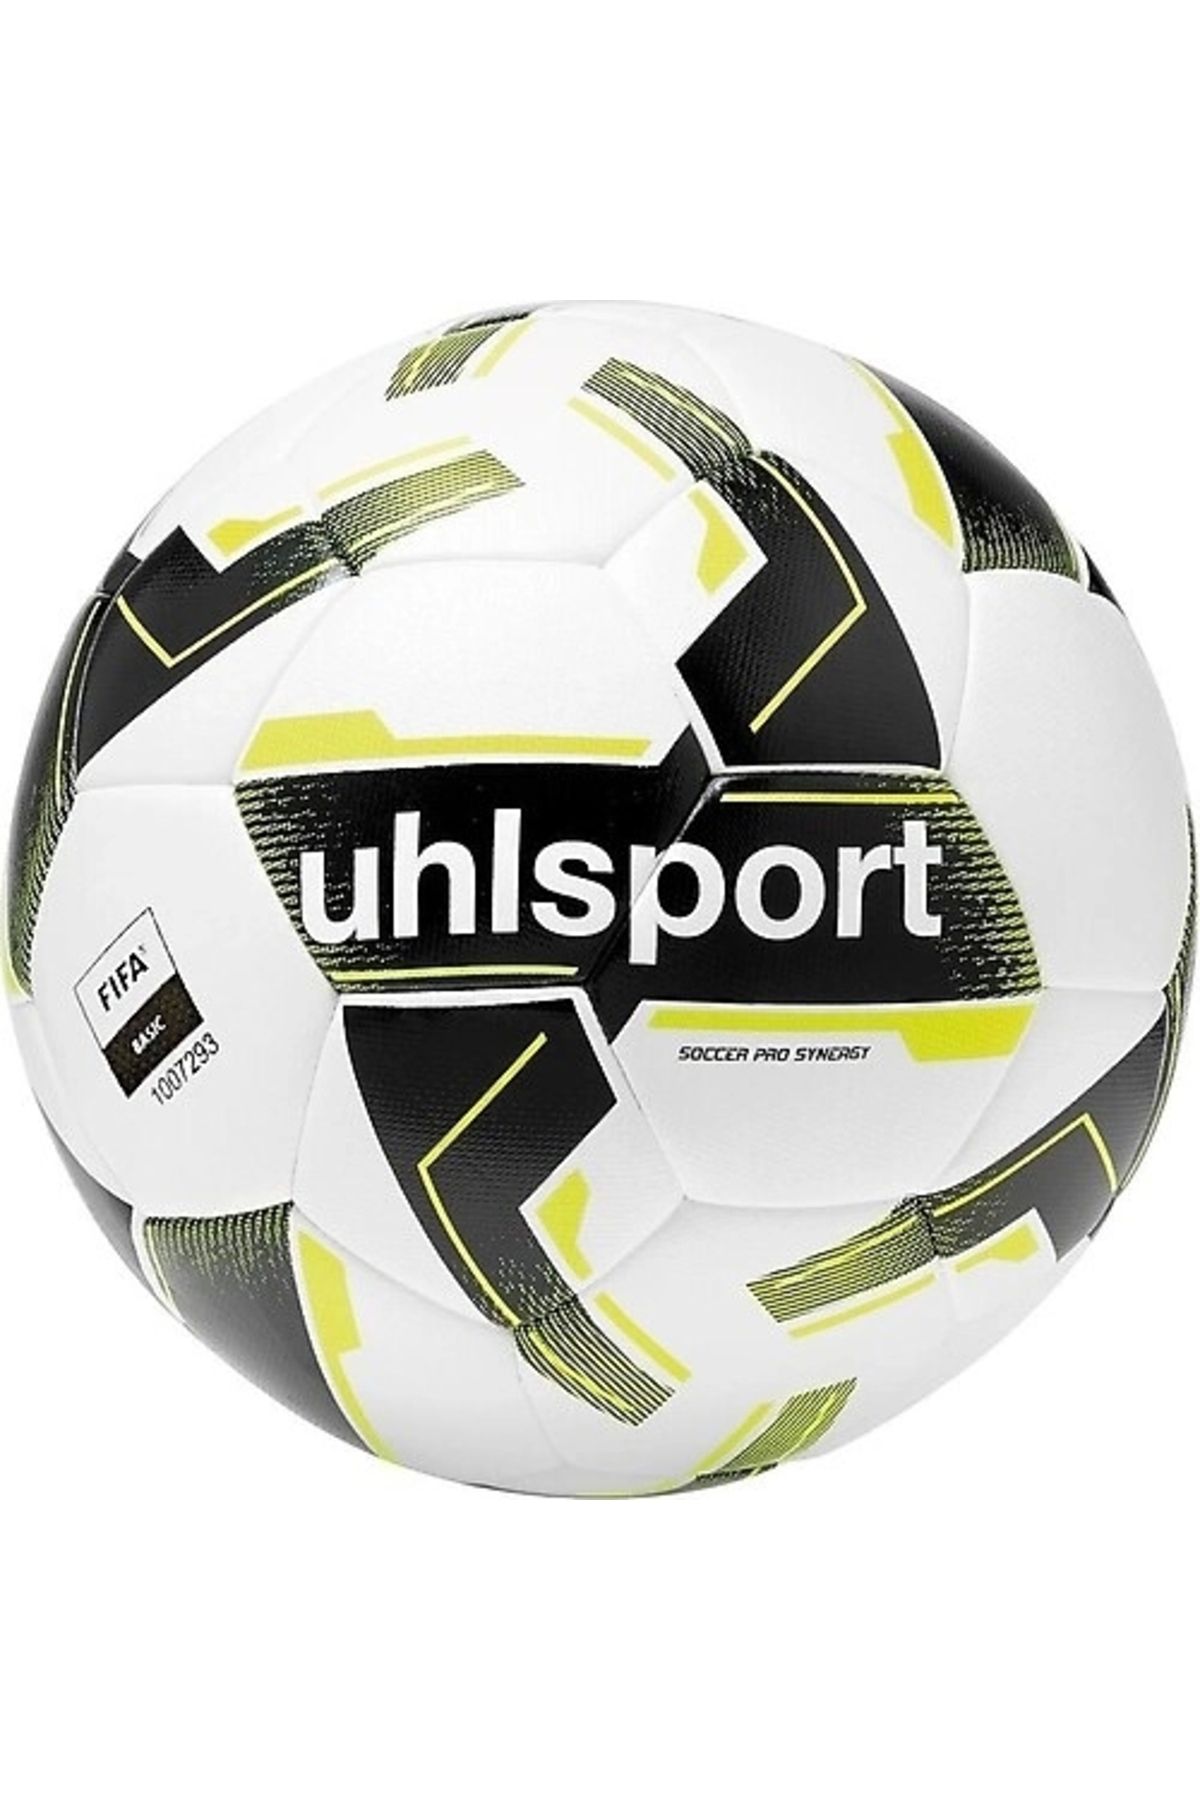 uhlsport Uhlshport 100171901 Soccer Pro Synergy Beyaz Futbol Topu